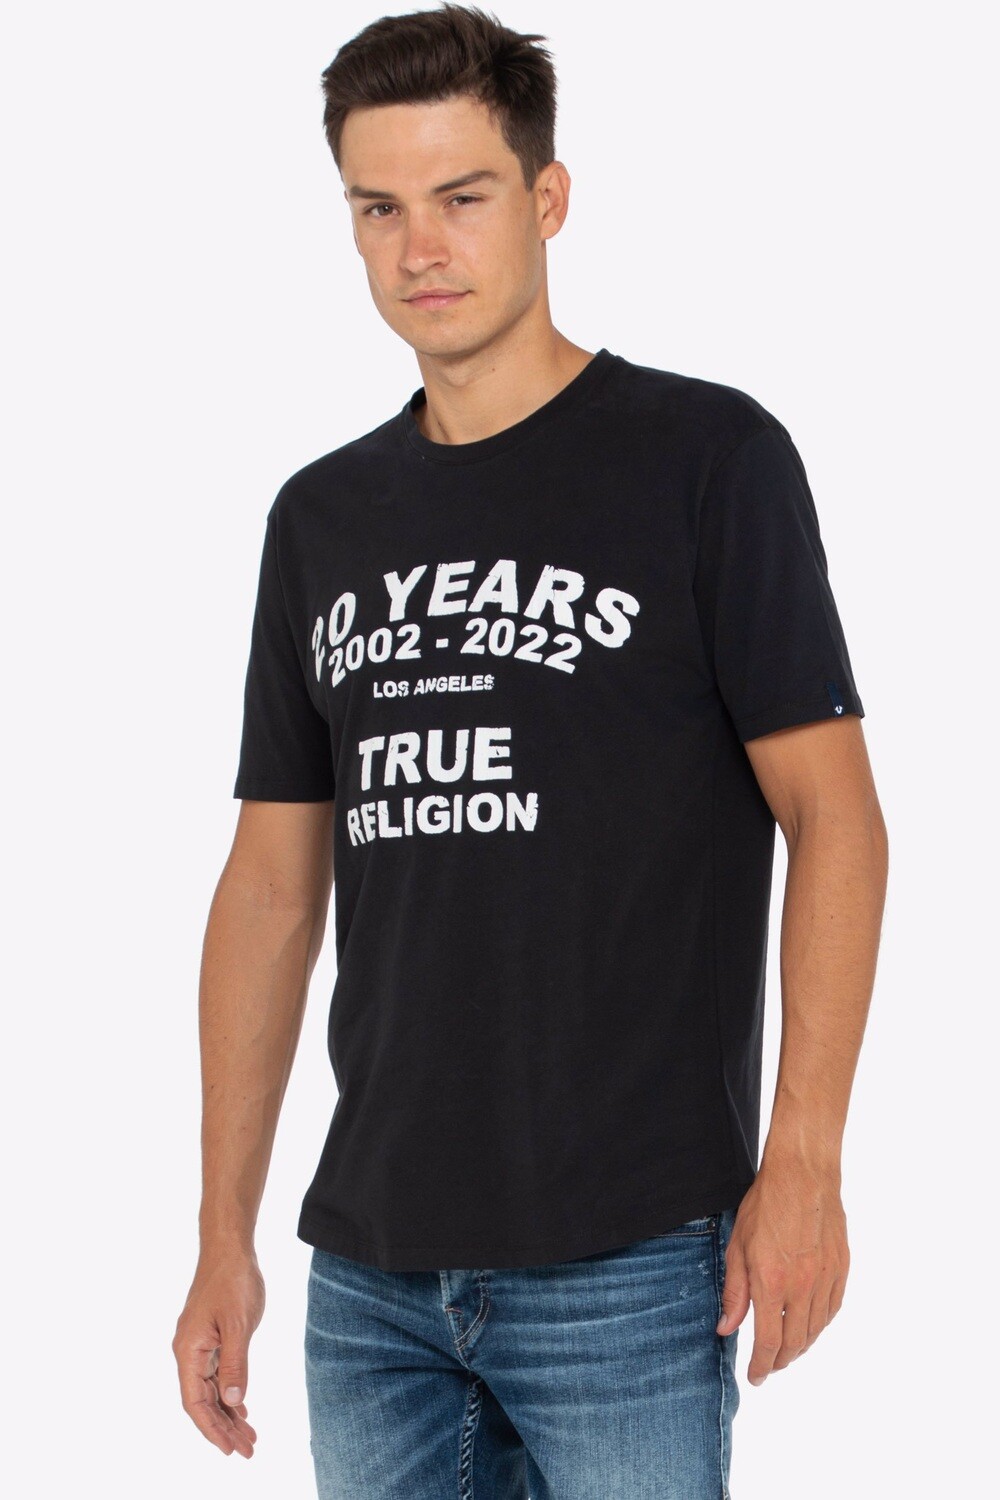 True Religion Shirt 20 YEARS